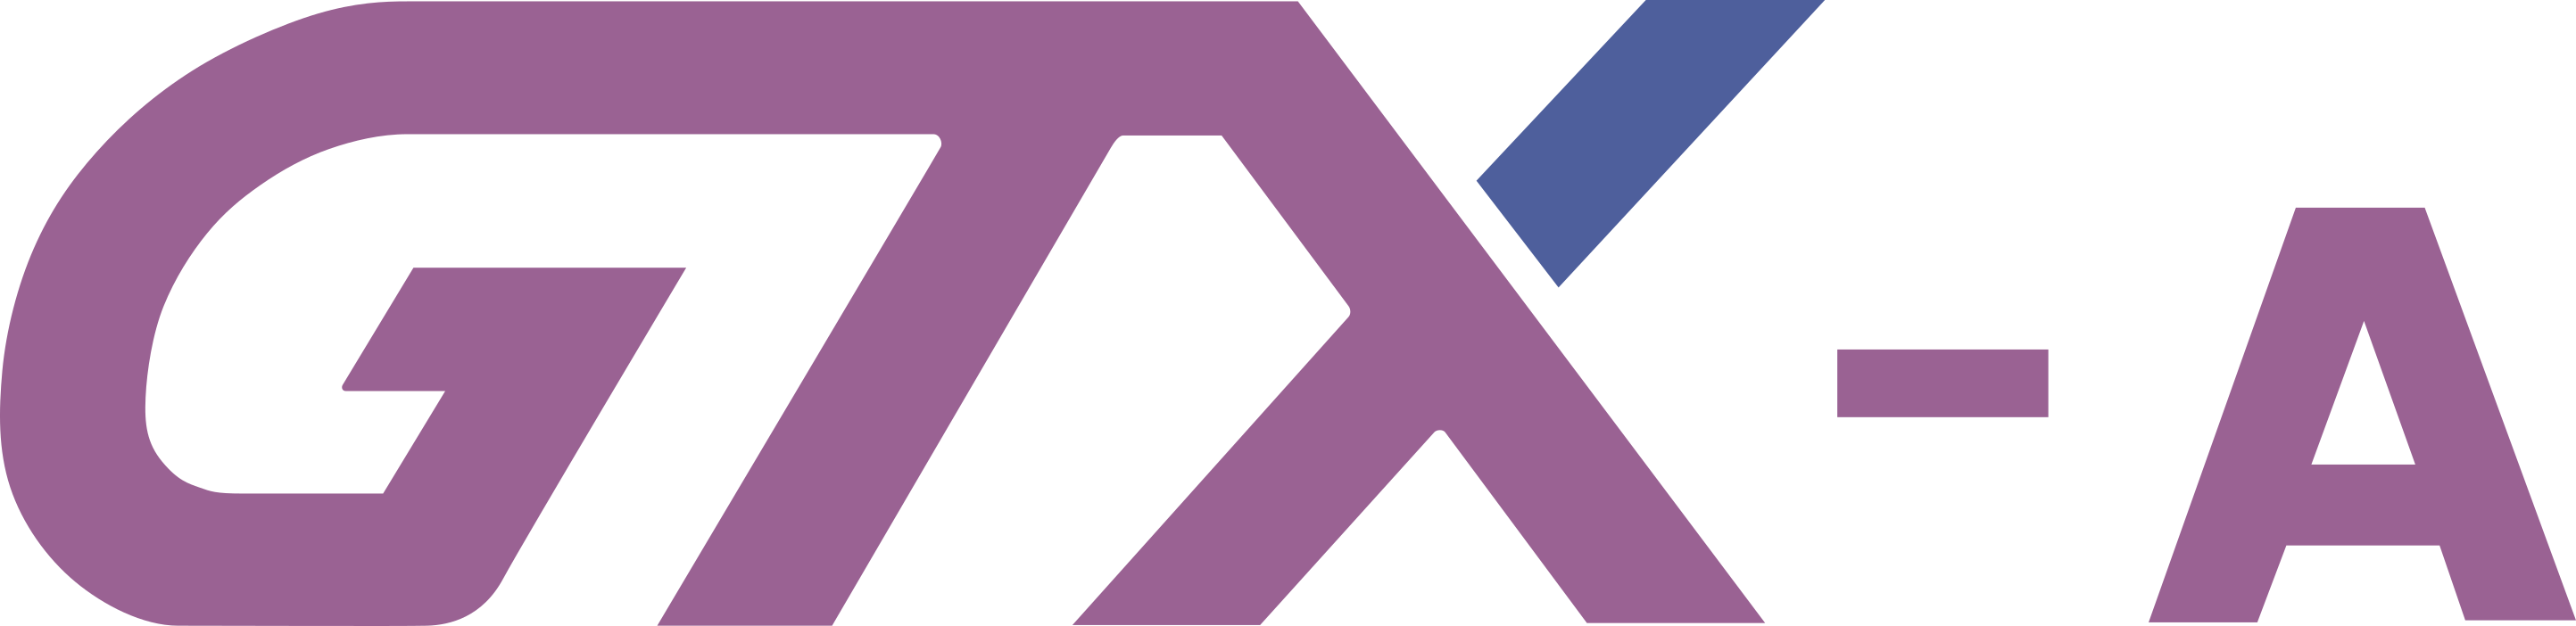 파일:GTX-A logo.png